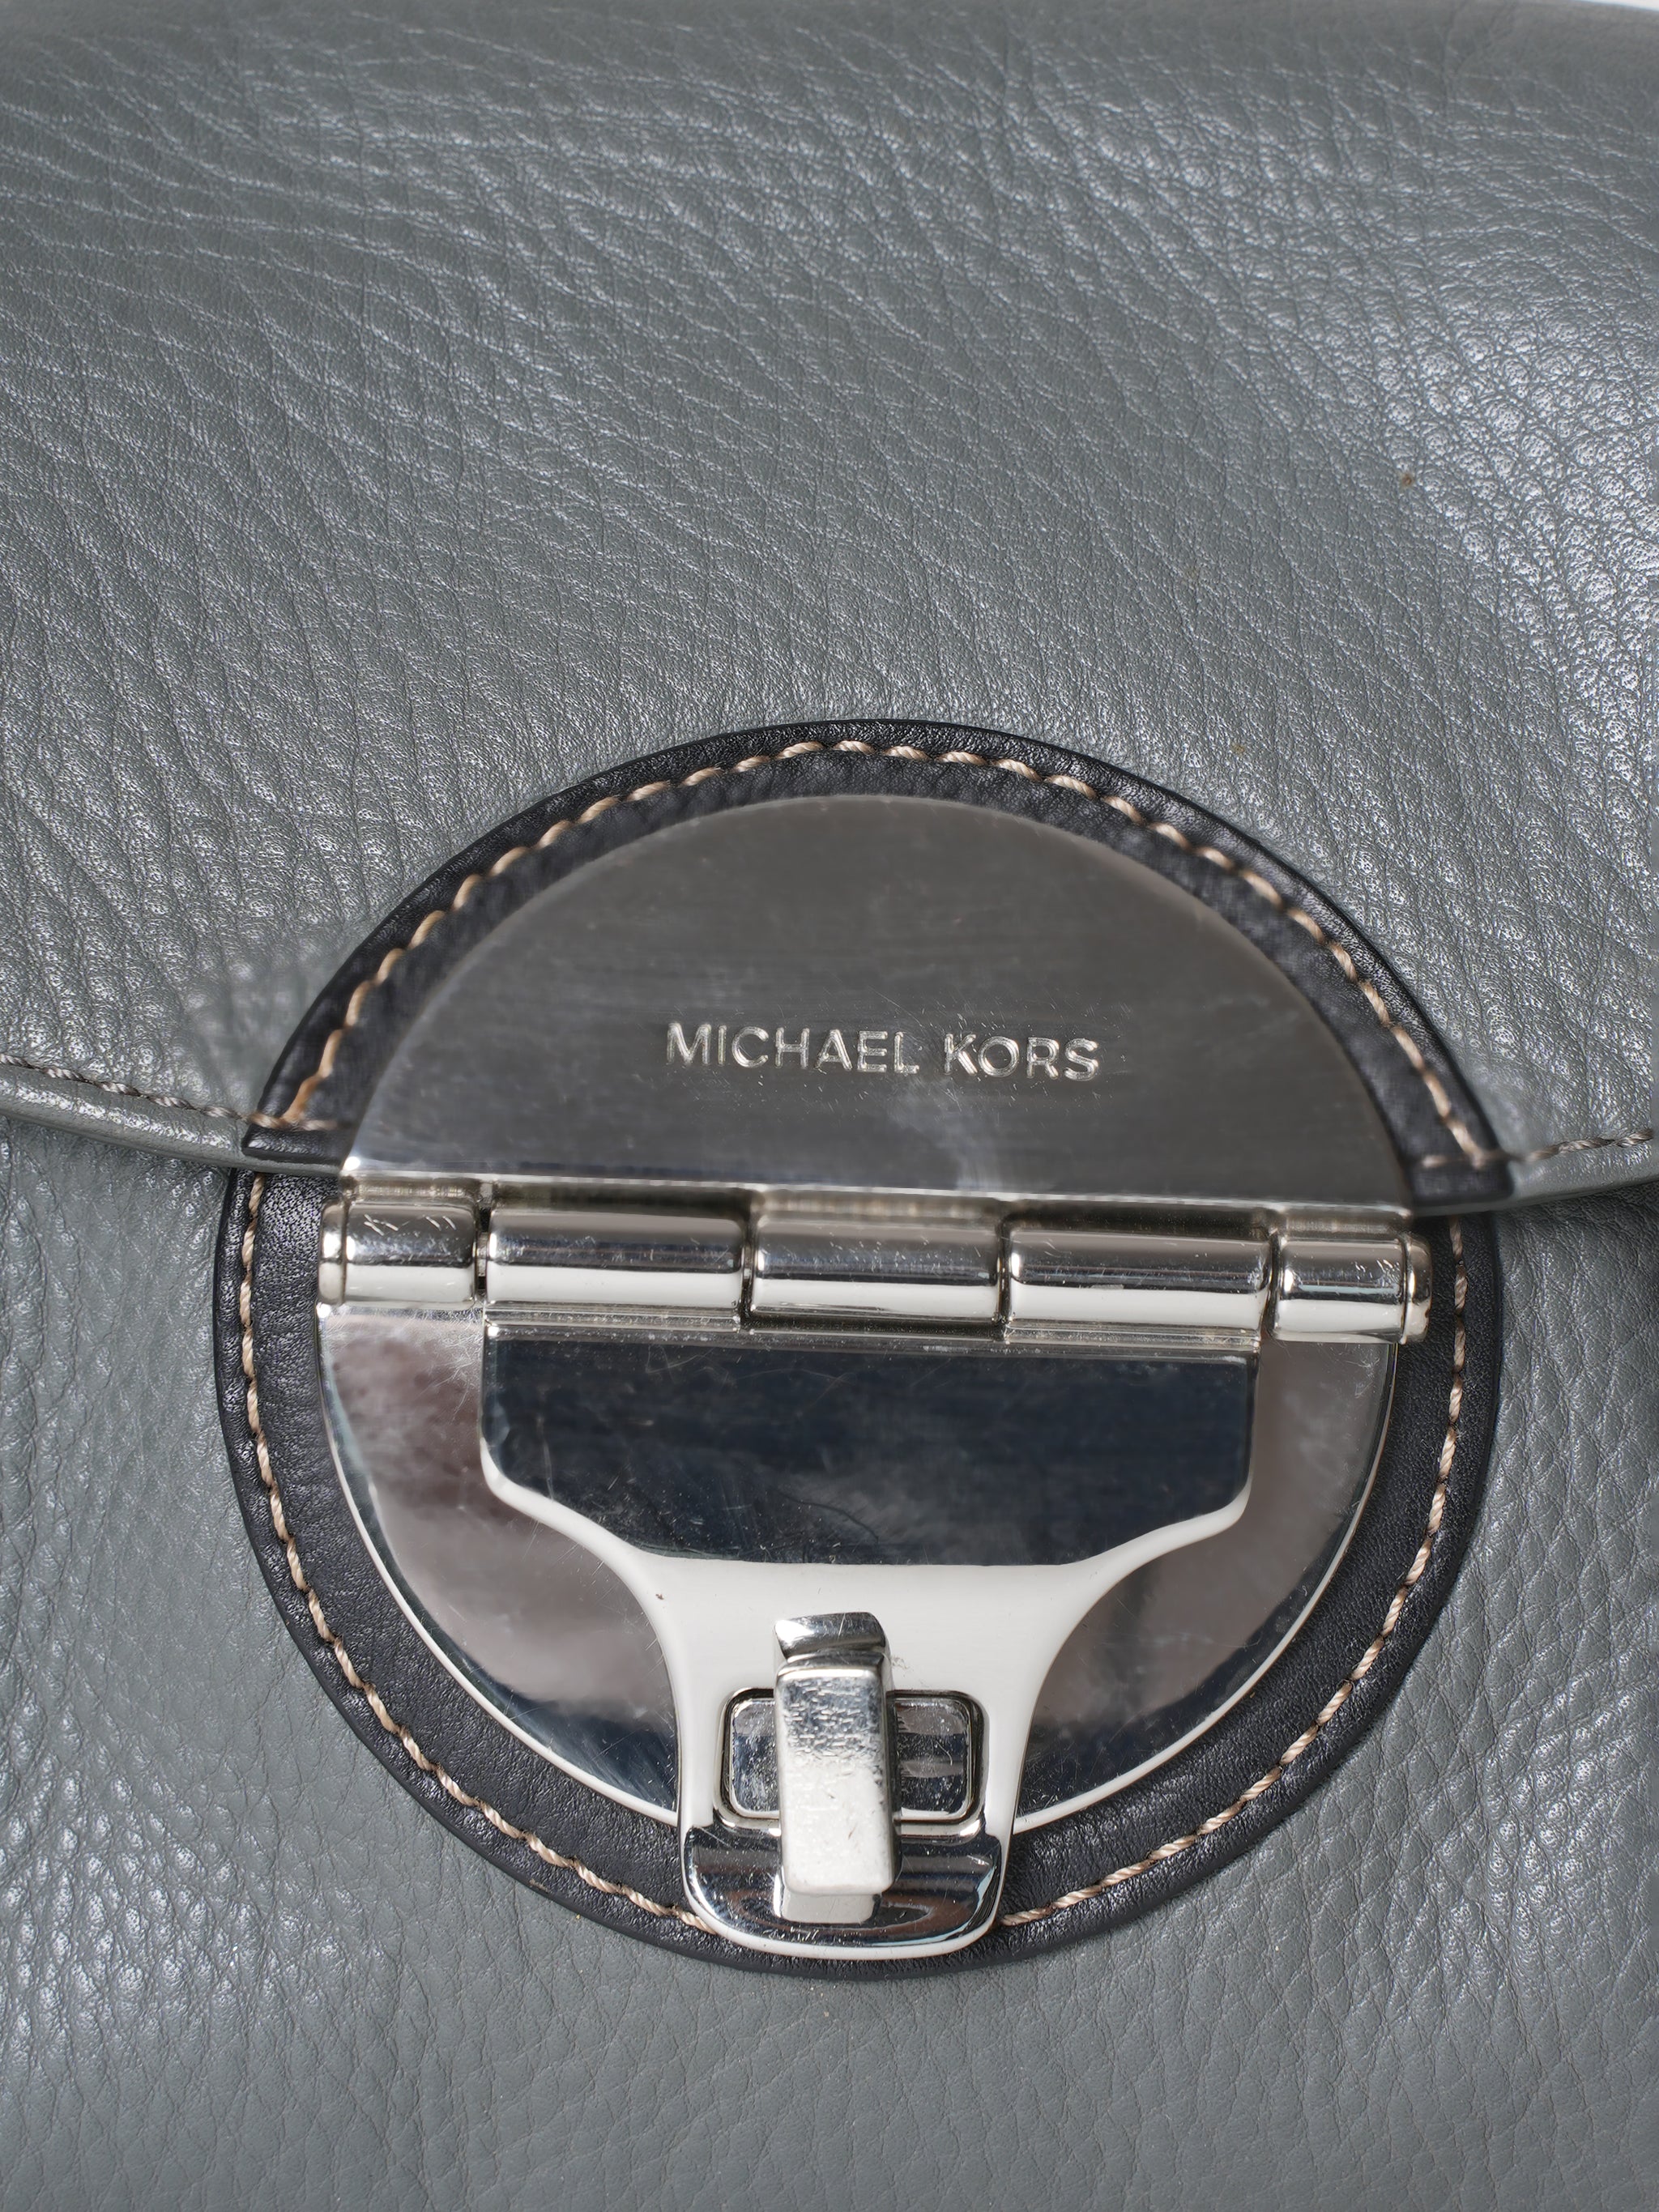 Michael Kors Turlock Top Handle Bag